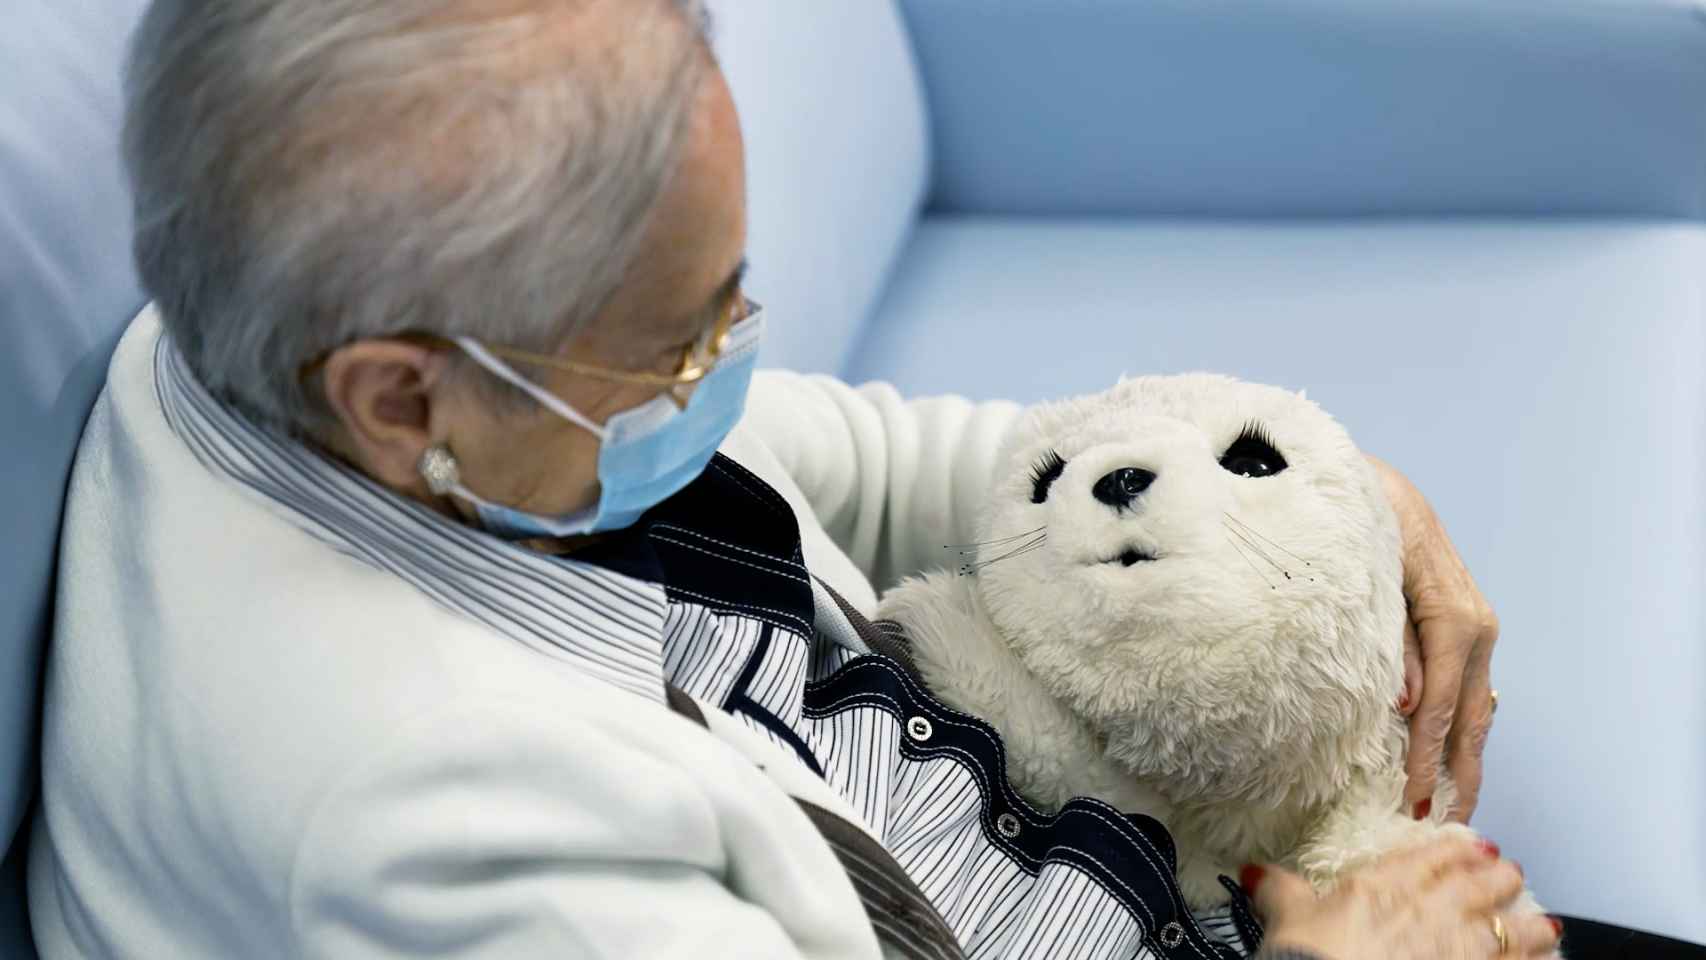 Perla es el nombre que se le ha dado a esta foca-robot que interactúa con los pacientes